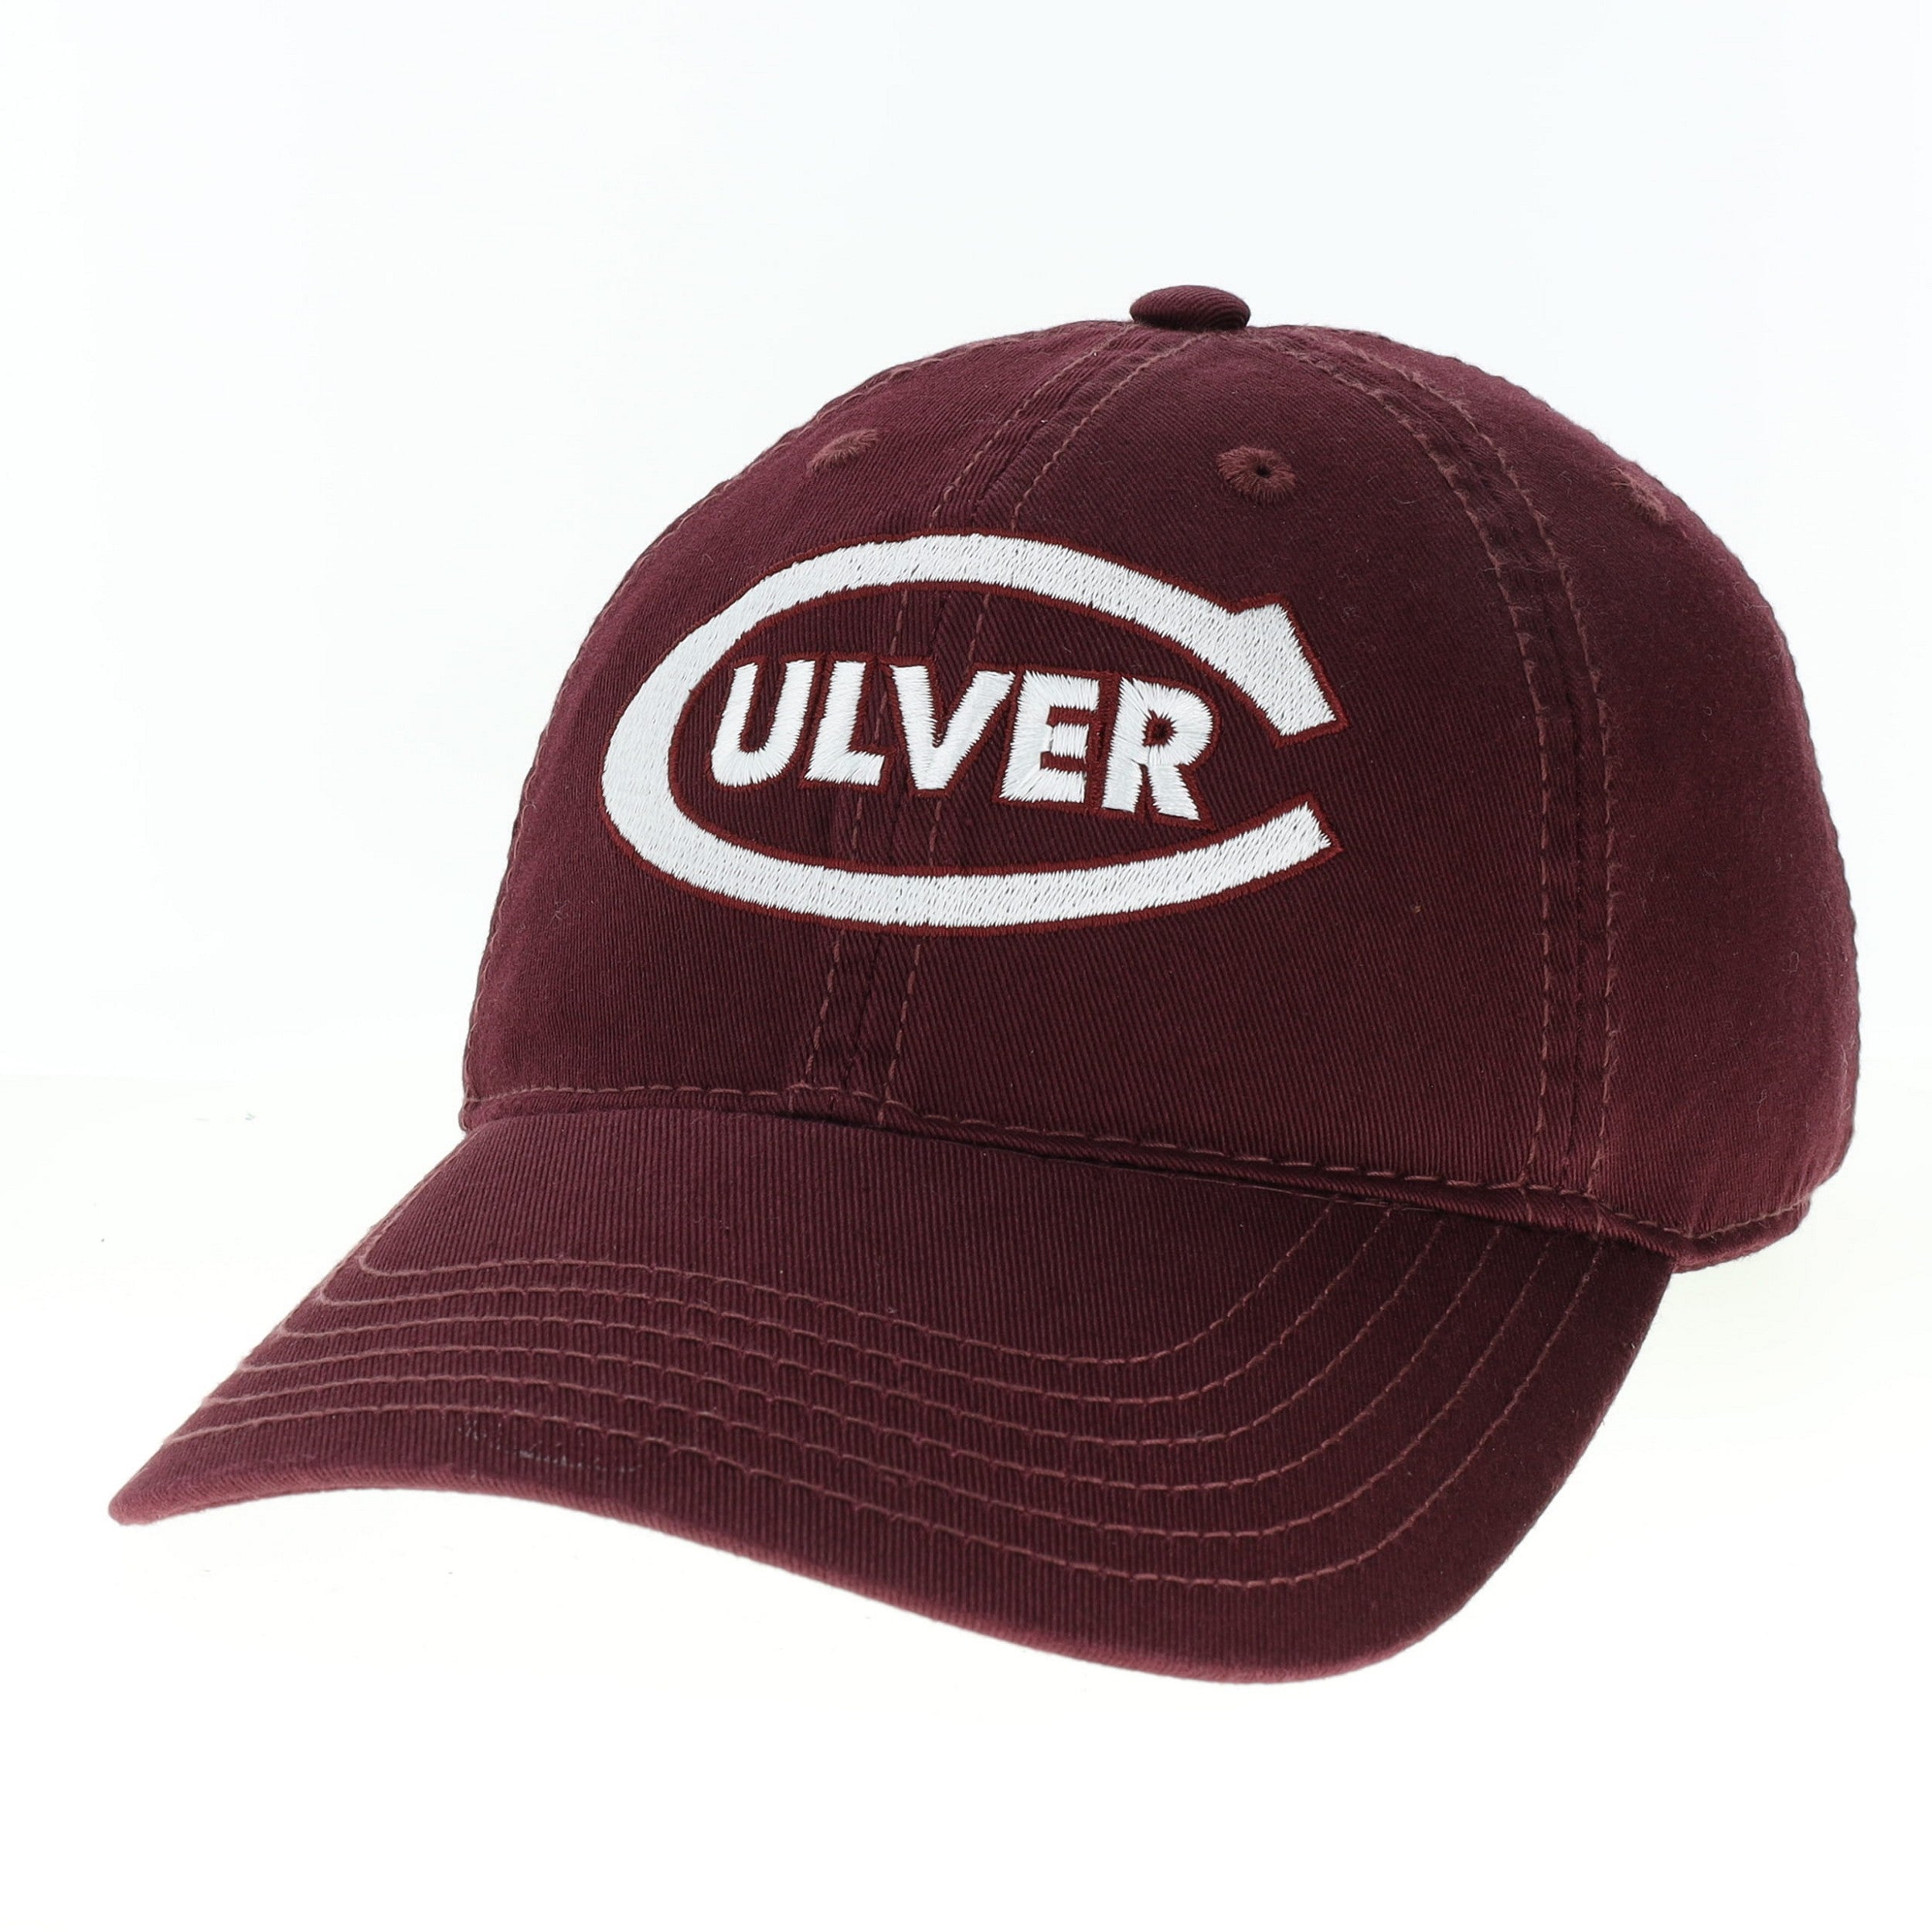 Culver-C Youth Hat - Maroon